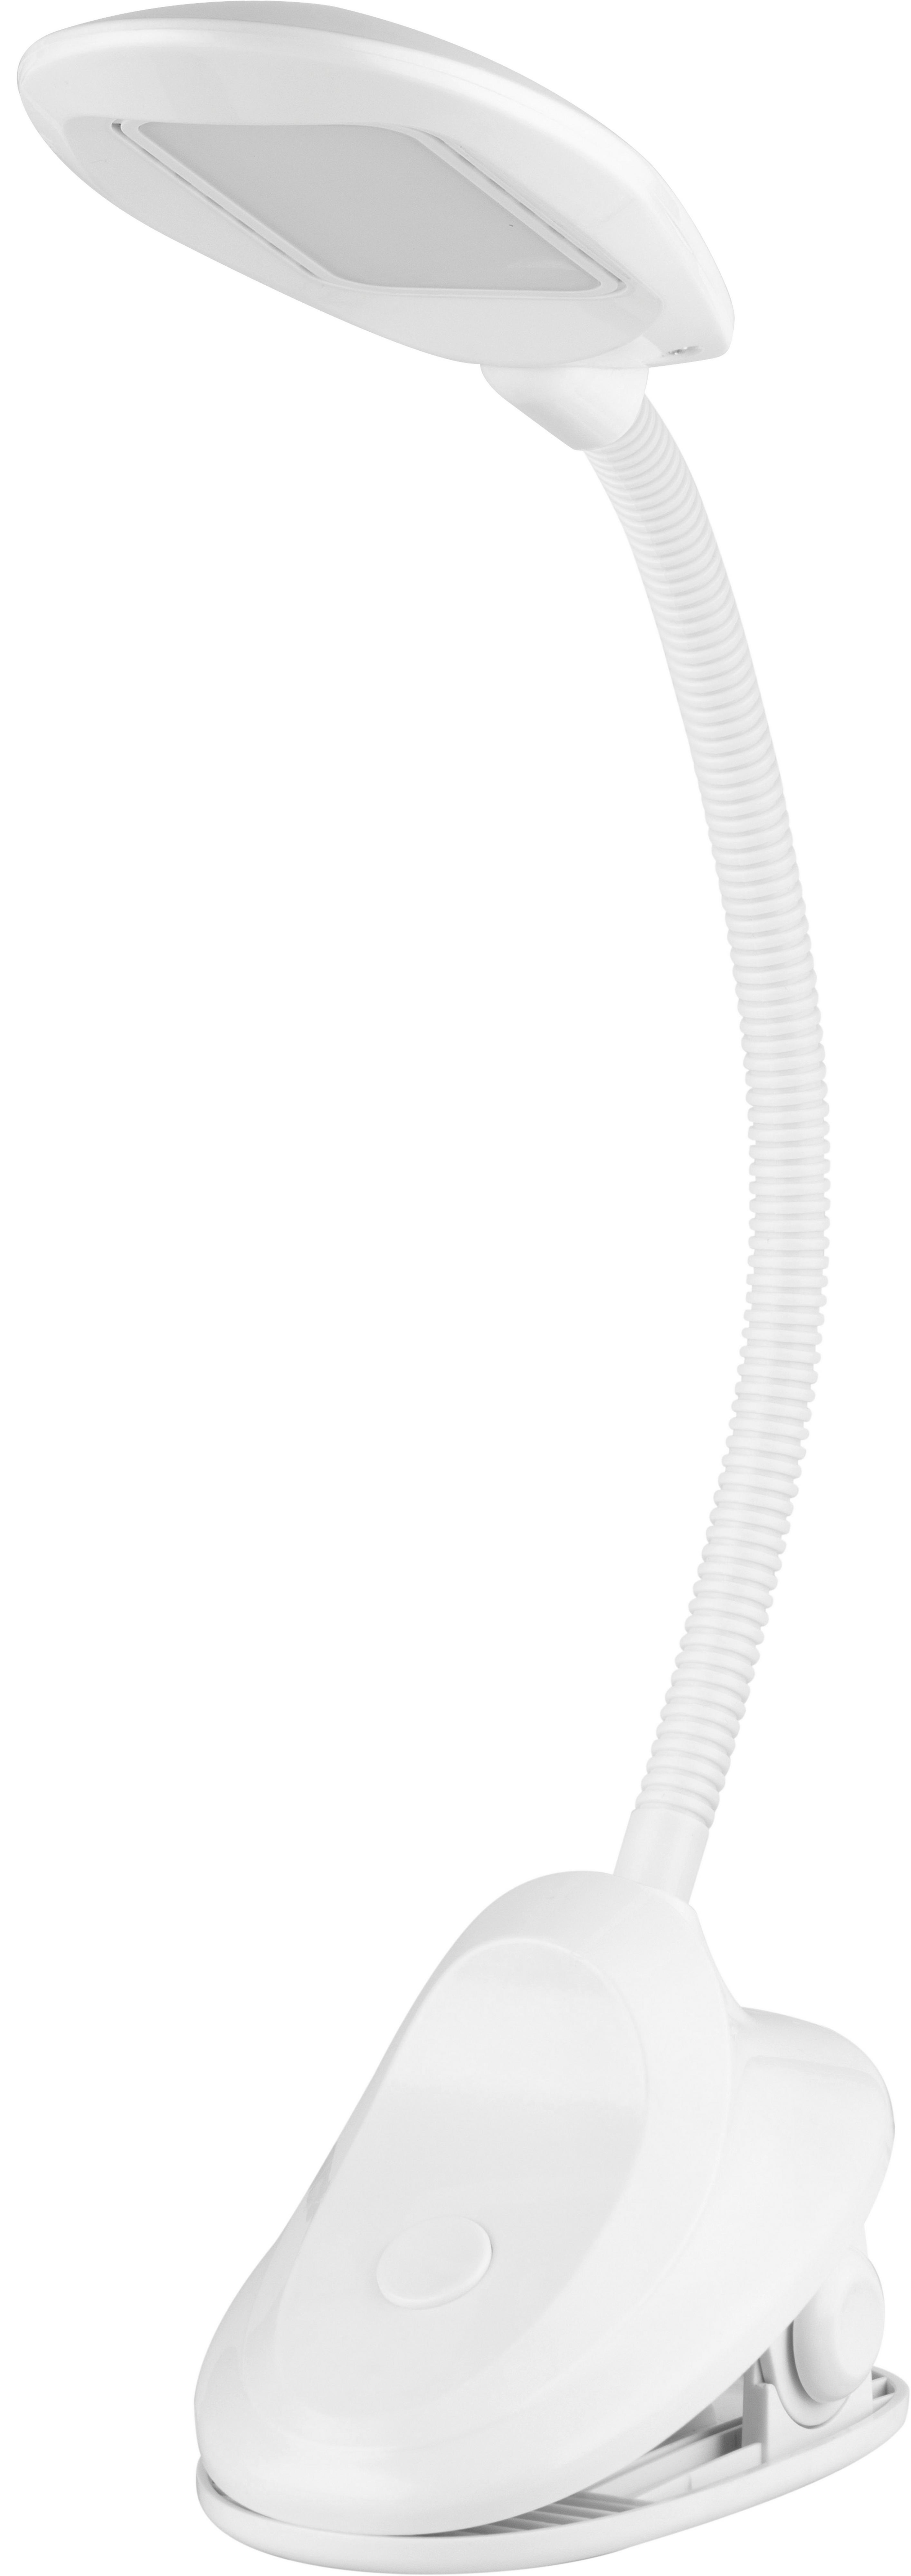 LED-Schreibtischleuchte Cipsi max. 7 Watt - Weiß, KONVENTIONELL, Kunststoff (57cm) - Modern Living